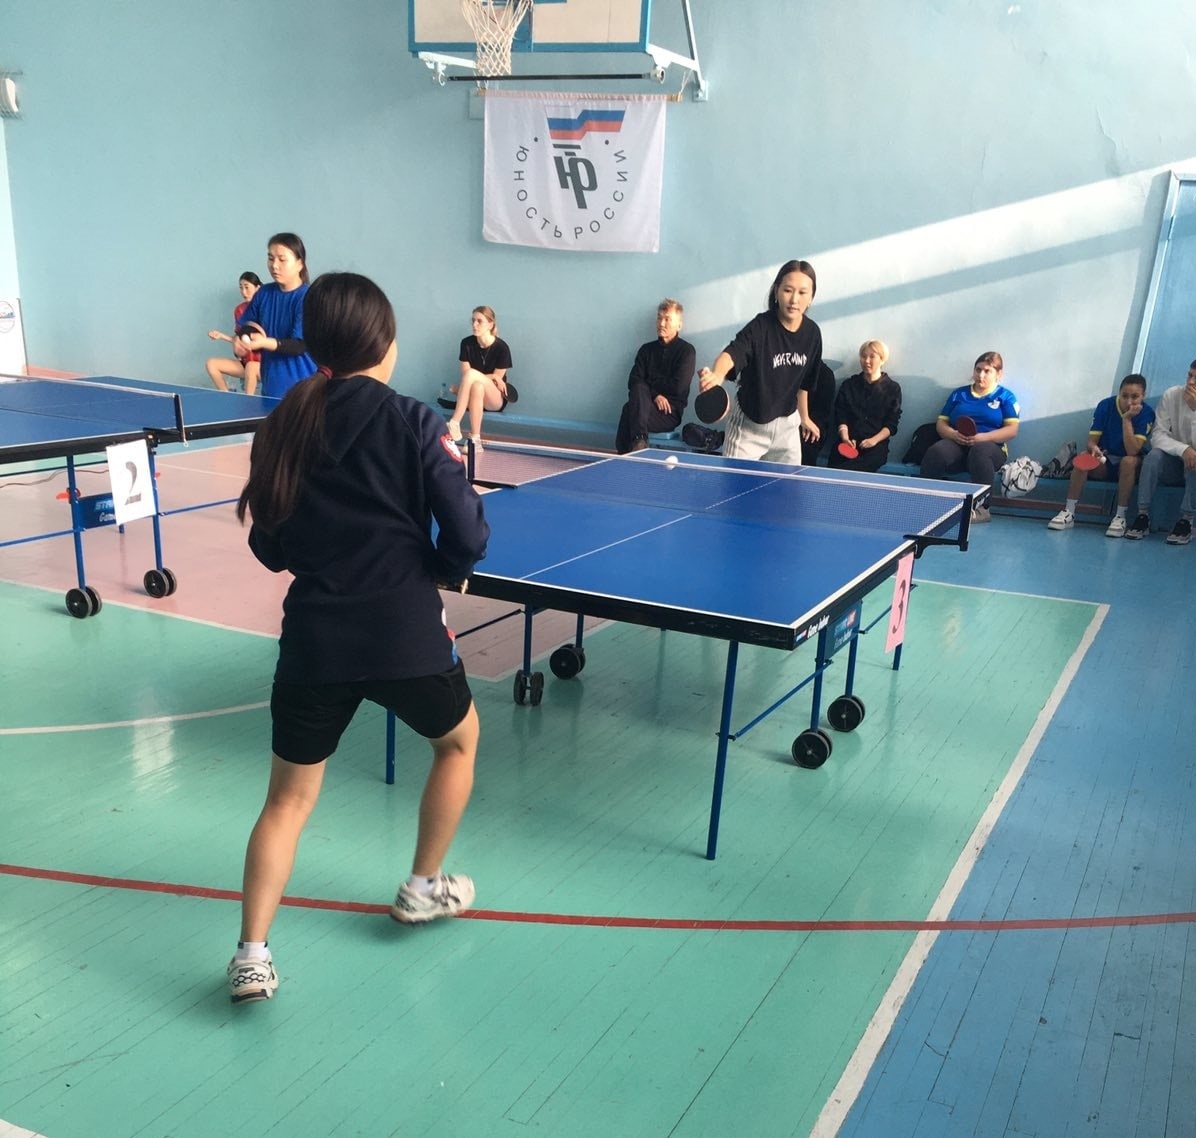 Первенство области по настольному теннису среди студентов прошло в Ангарске